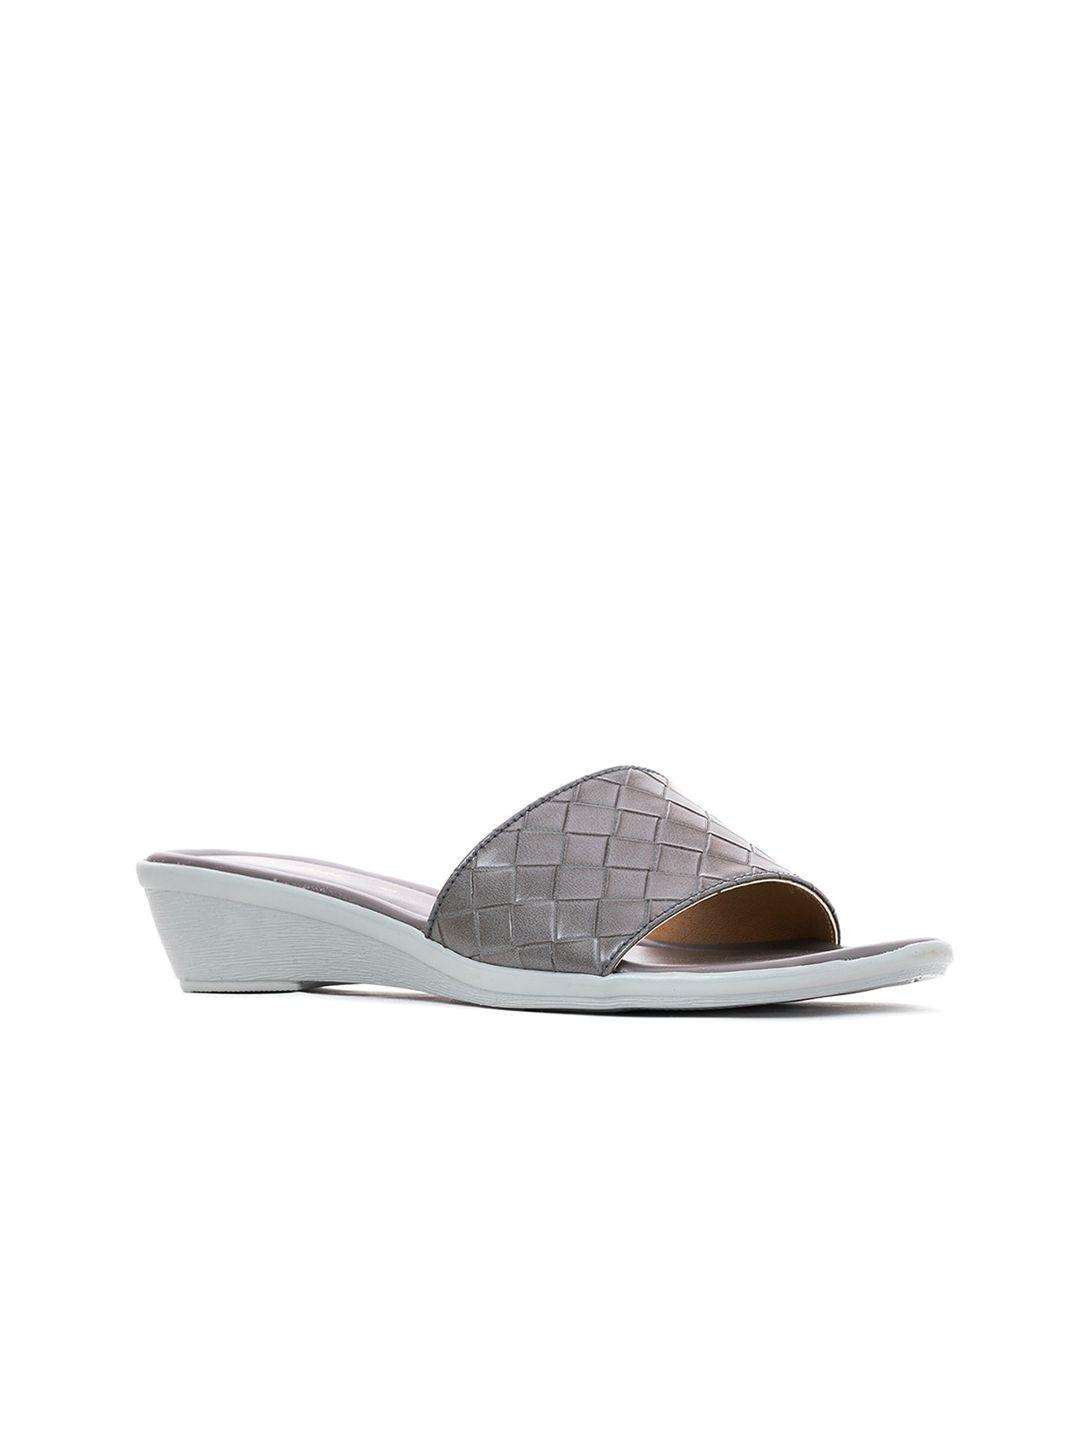 khadims grey textured comfort heels